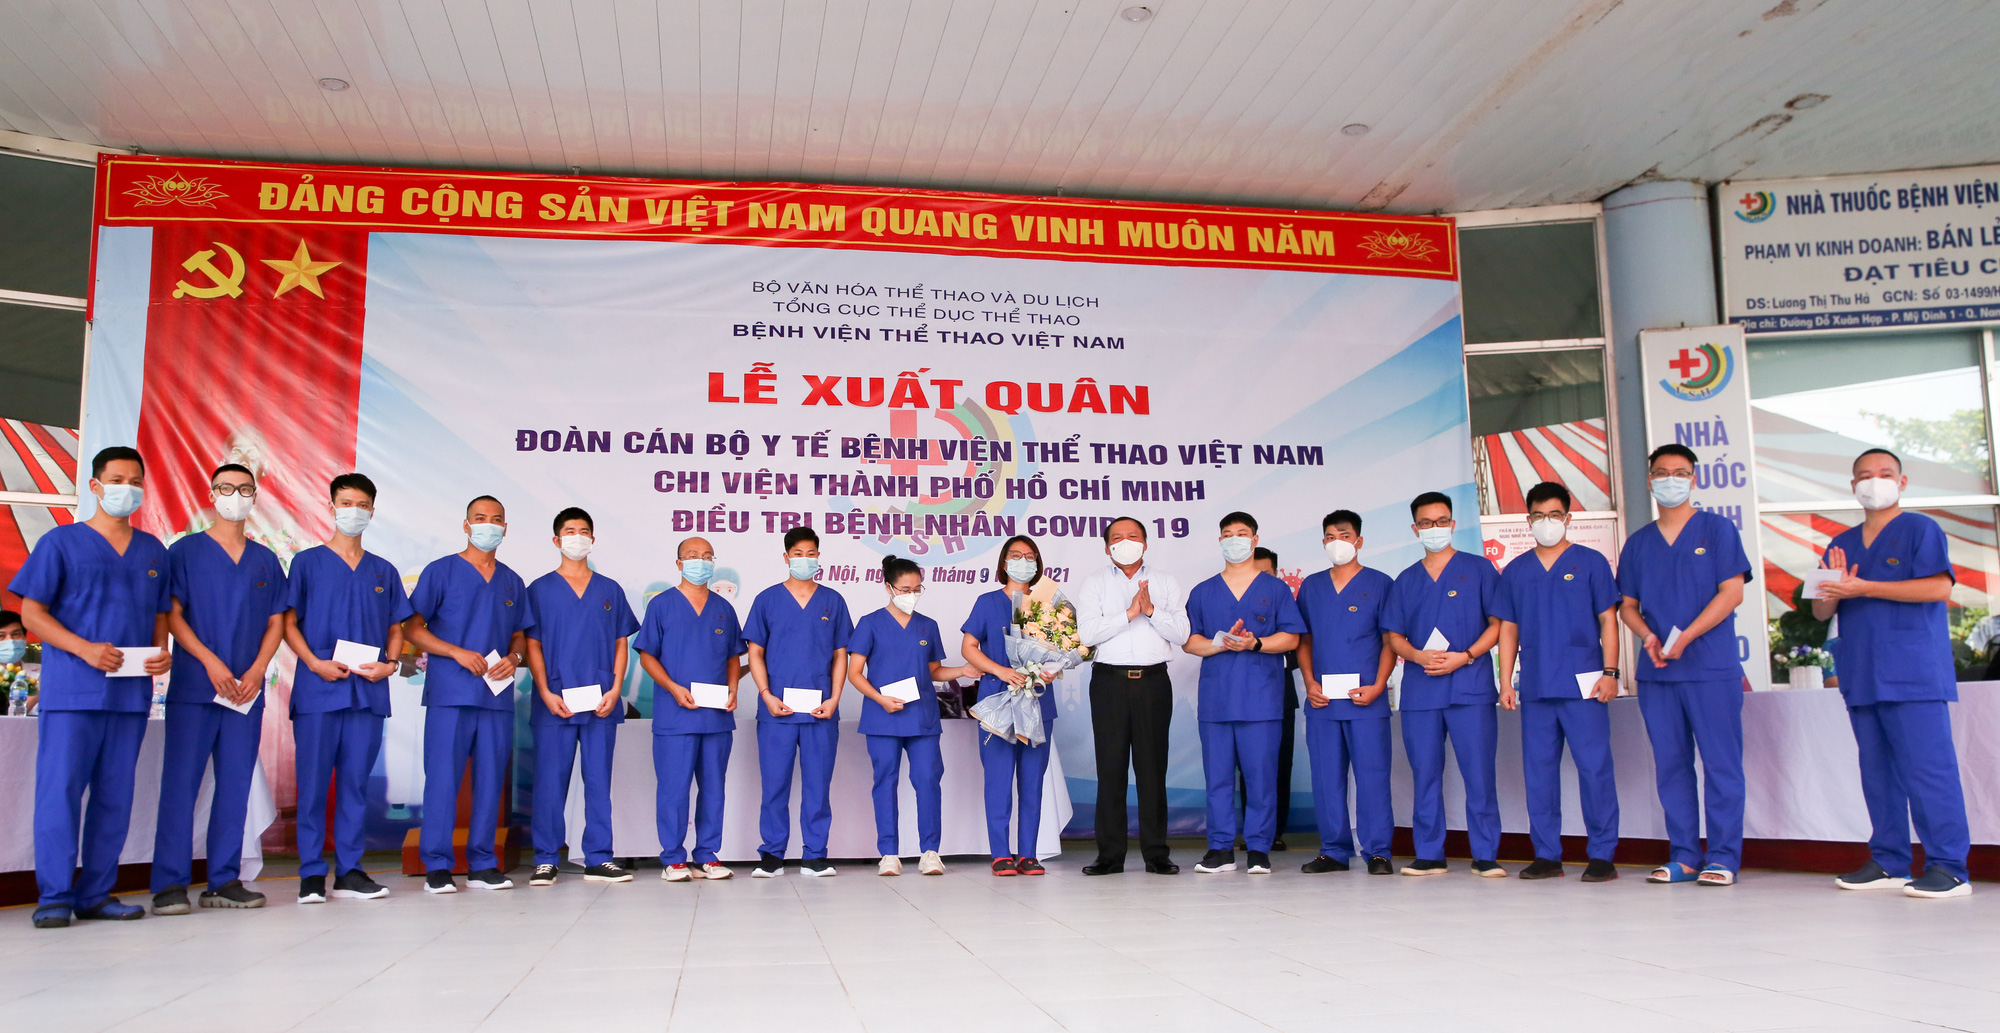 Bệnh viên Thể thao Việt Nam xuất quân tăng cường lực lượng vào miền Nam chống dịch - Ảnh 8.